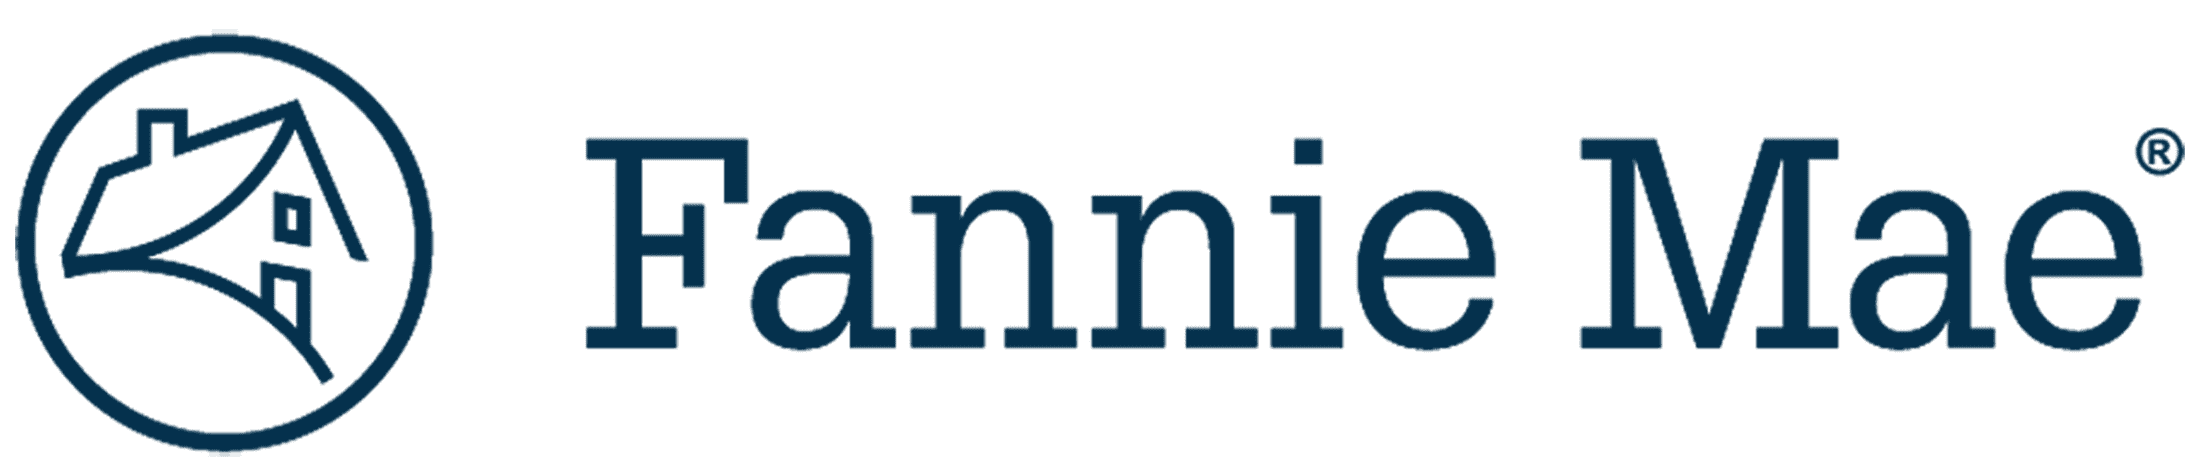 Logo for fannie mae